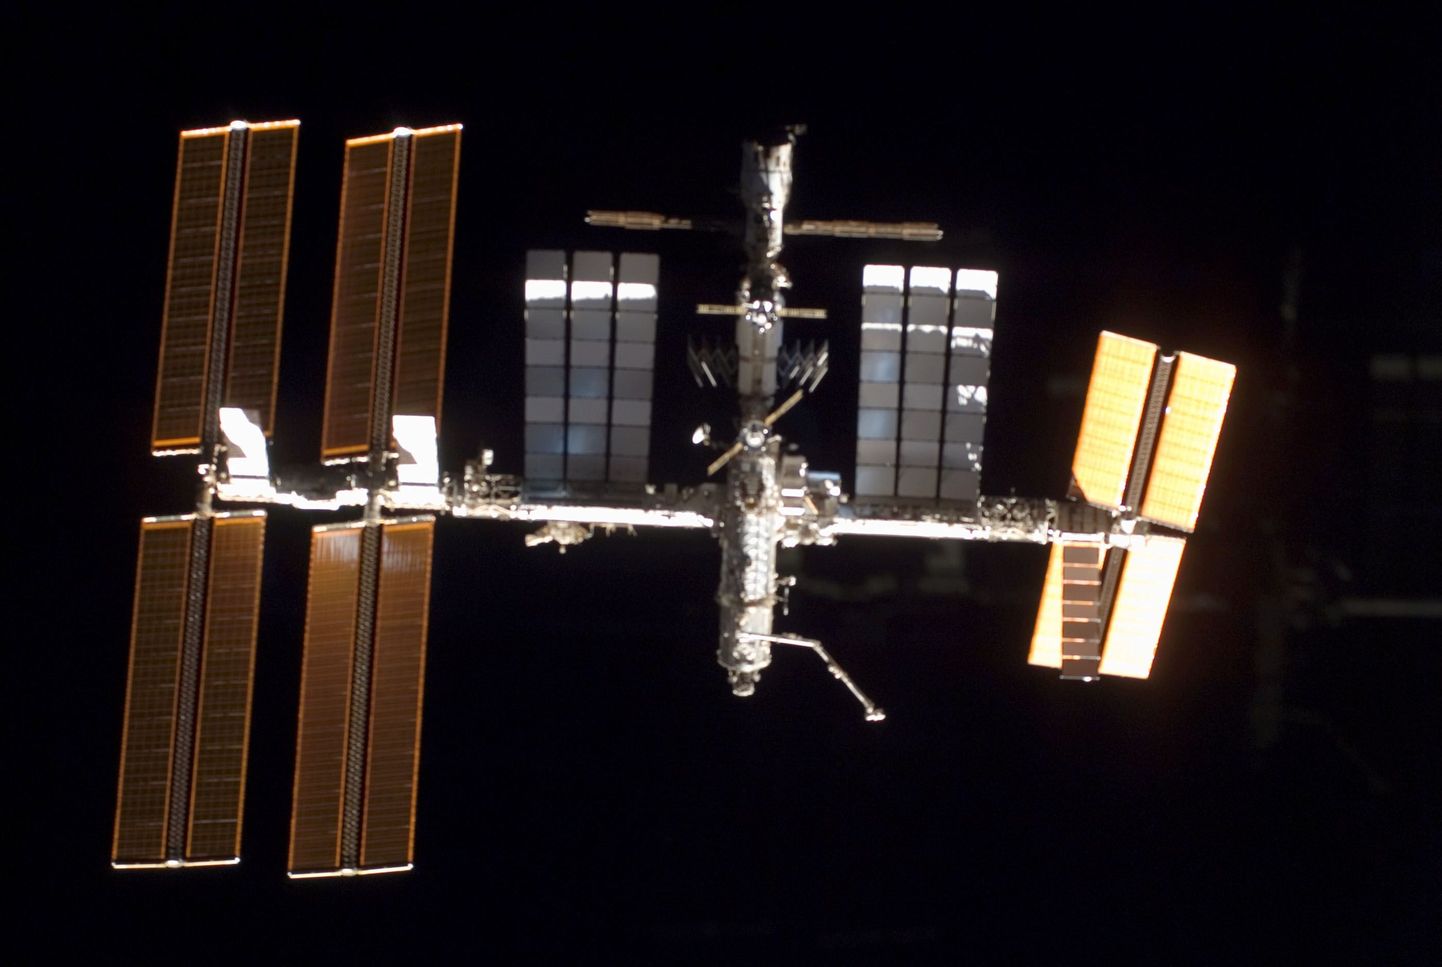 Rahvusvaheline Kosmosejaam (ISS)